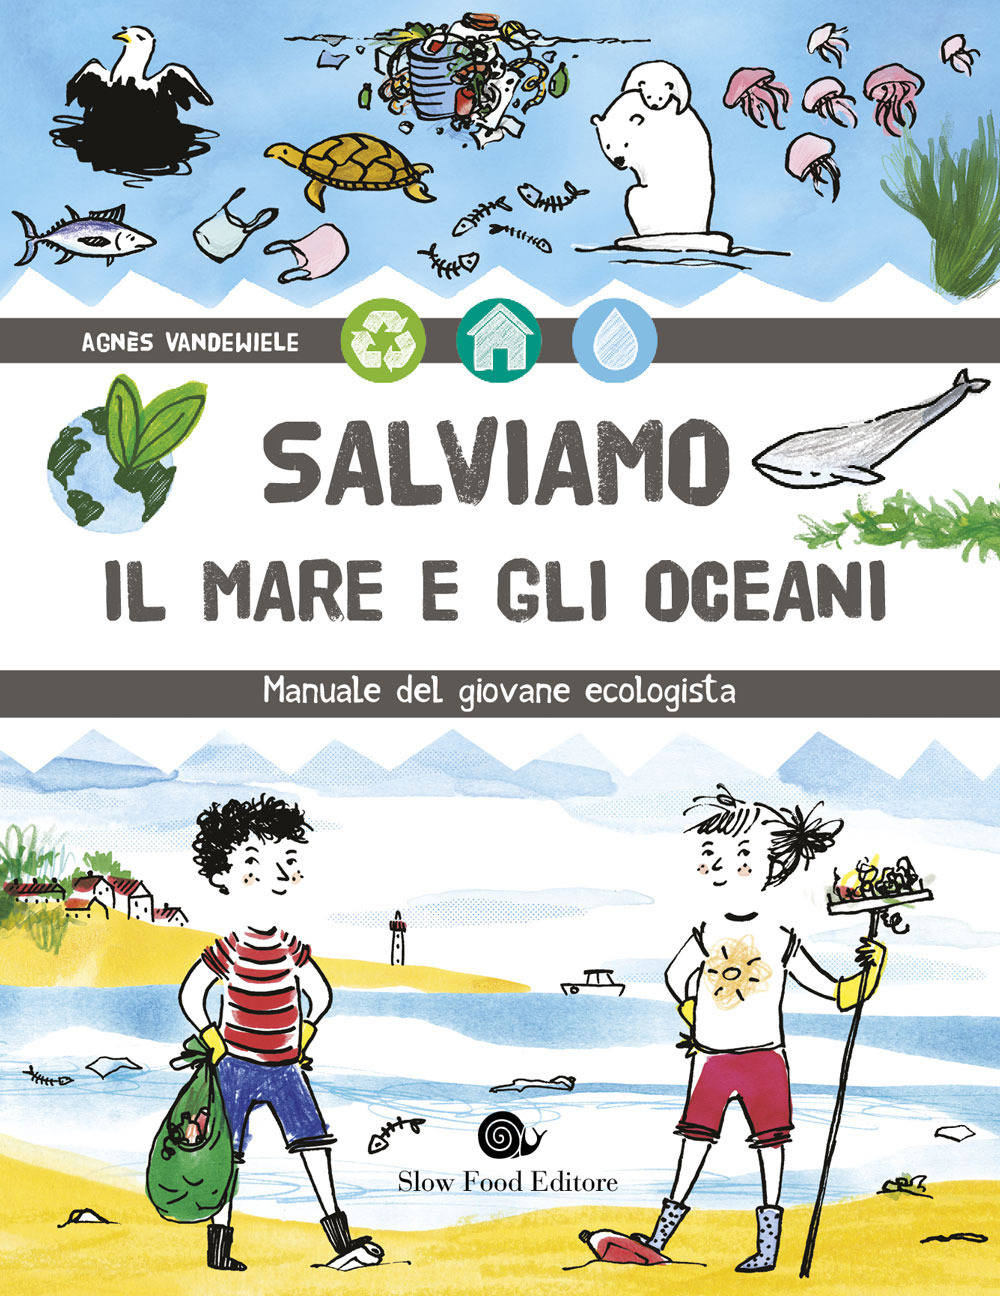 Salviamo il mare e gli oceani: In libreria il “manuale del giovane ecologista”